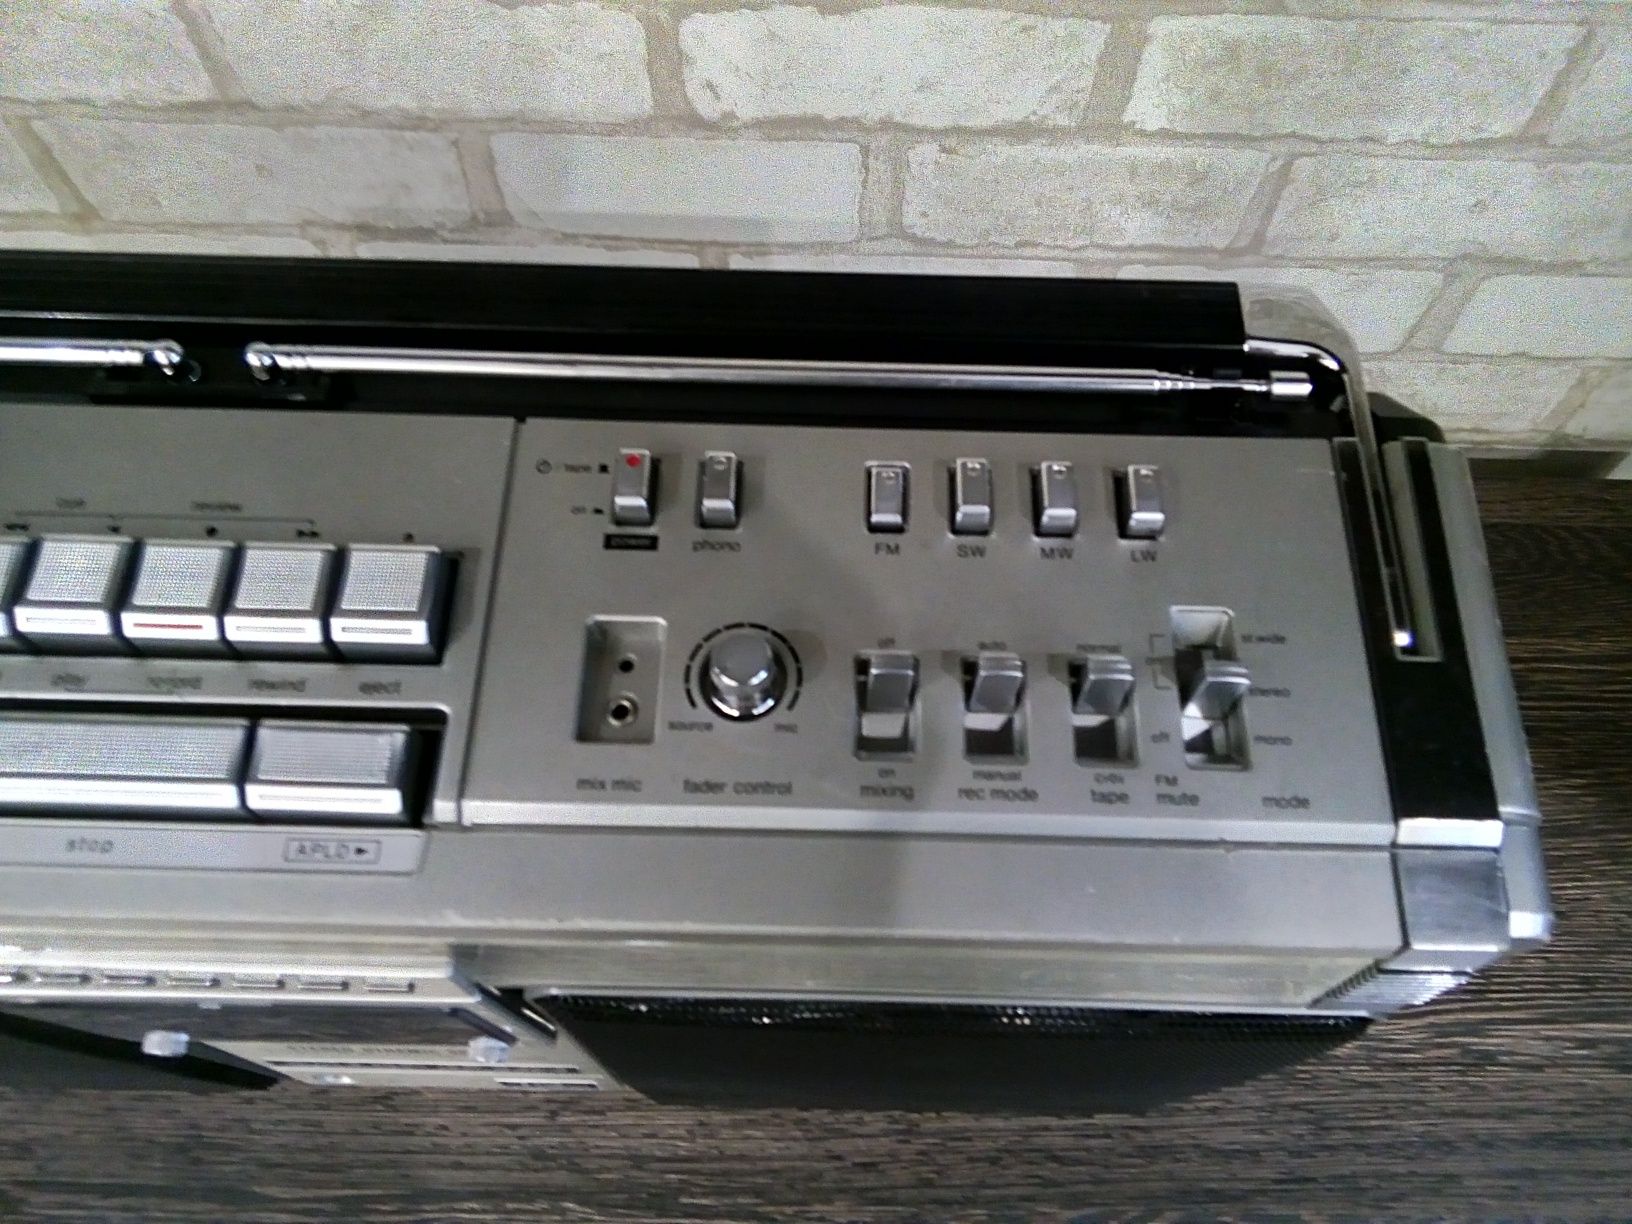 Sharp GF-9494H Stereo Radio - Tape Recorder 1980